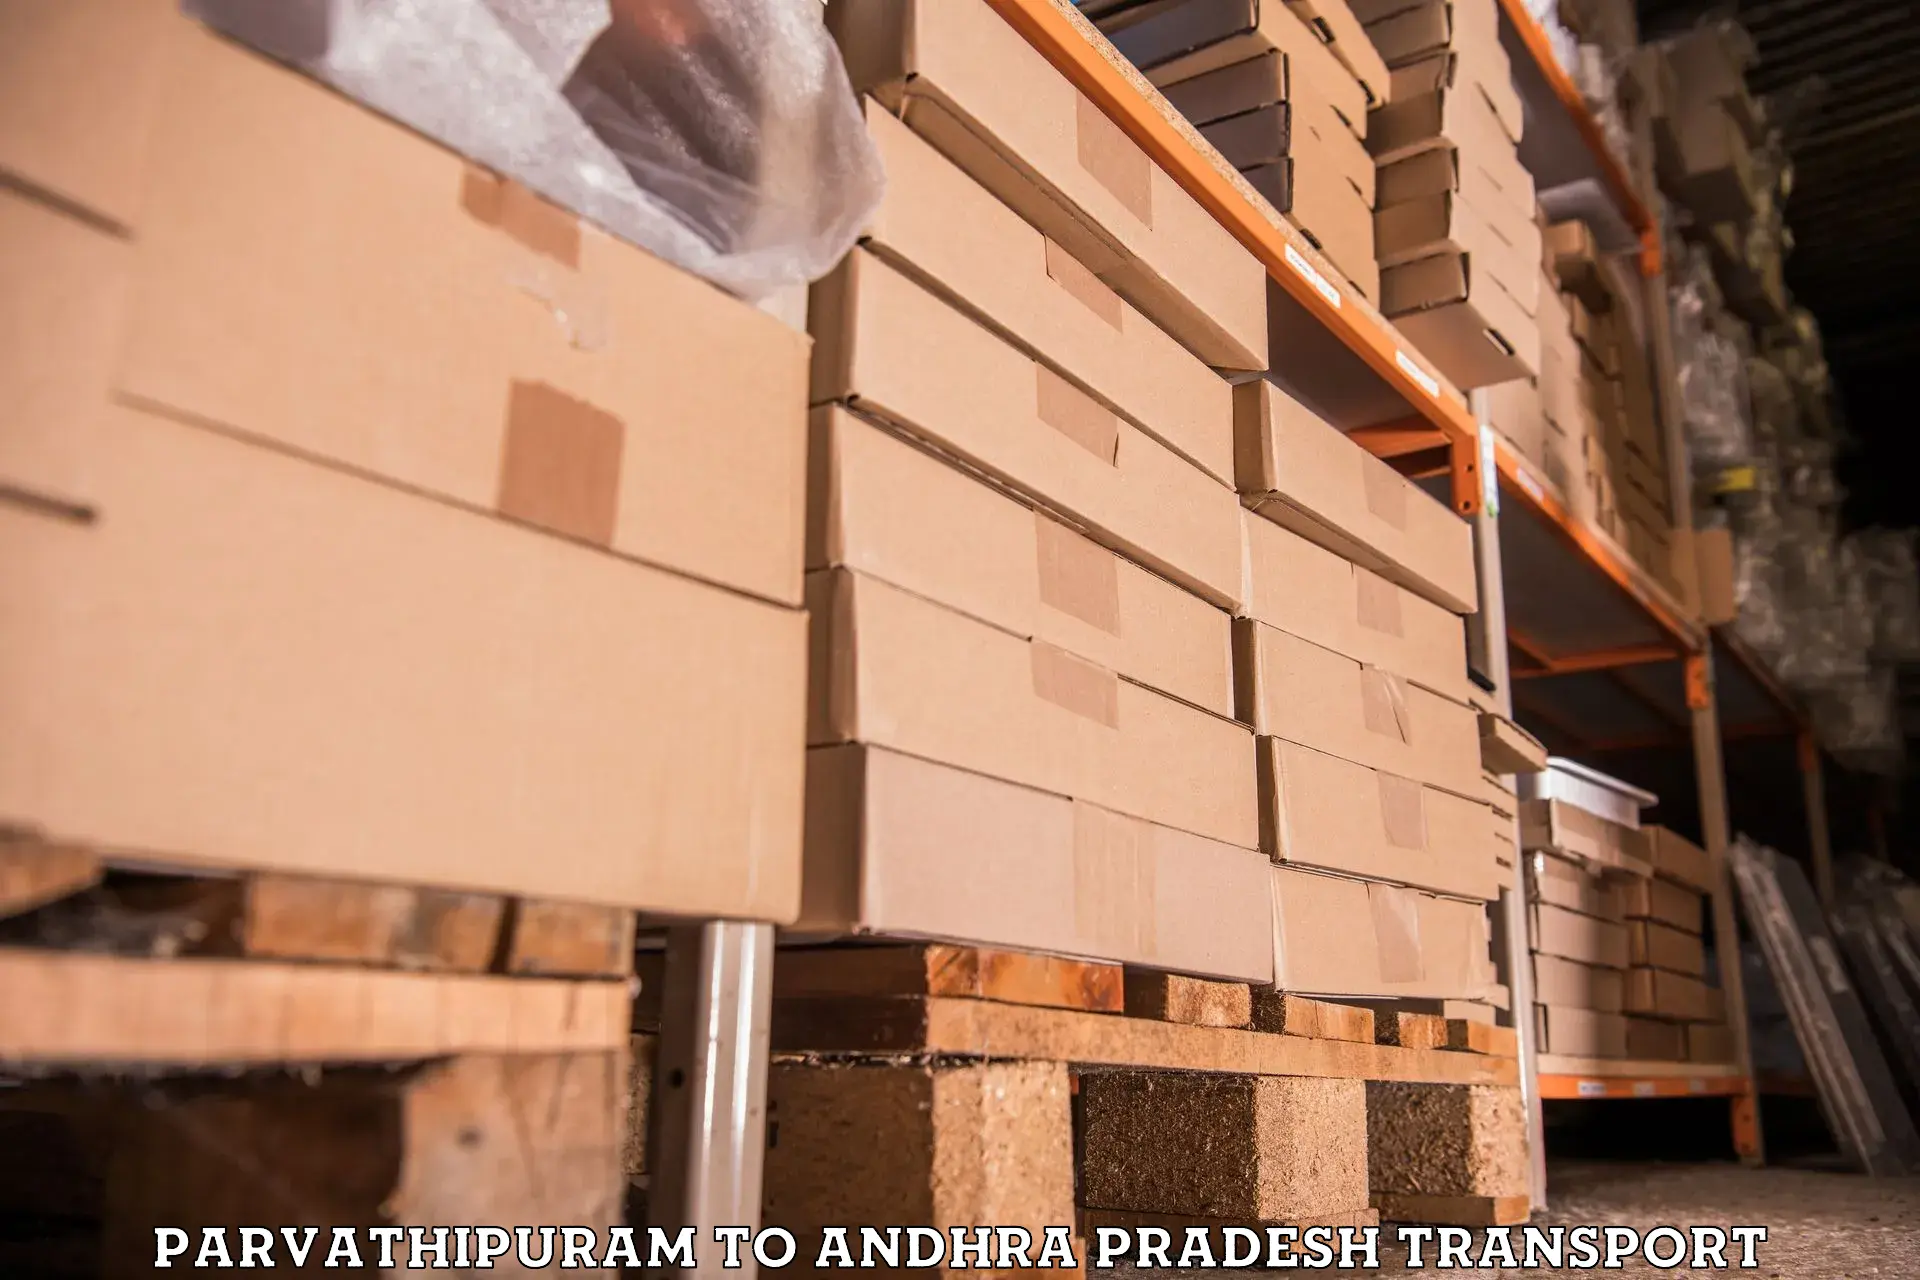 Furniture transport service Parvathipuram to Malikipuram